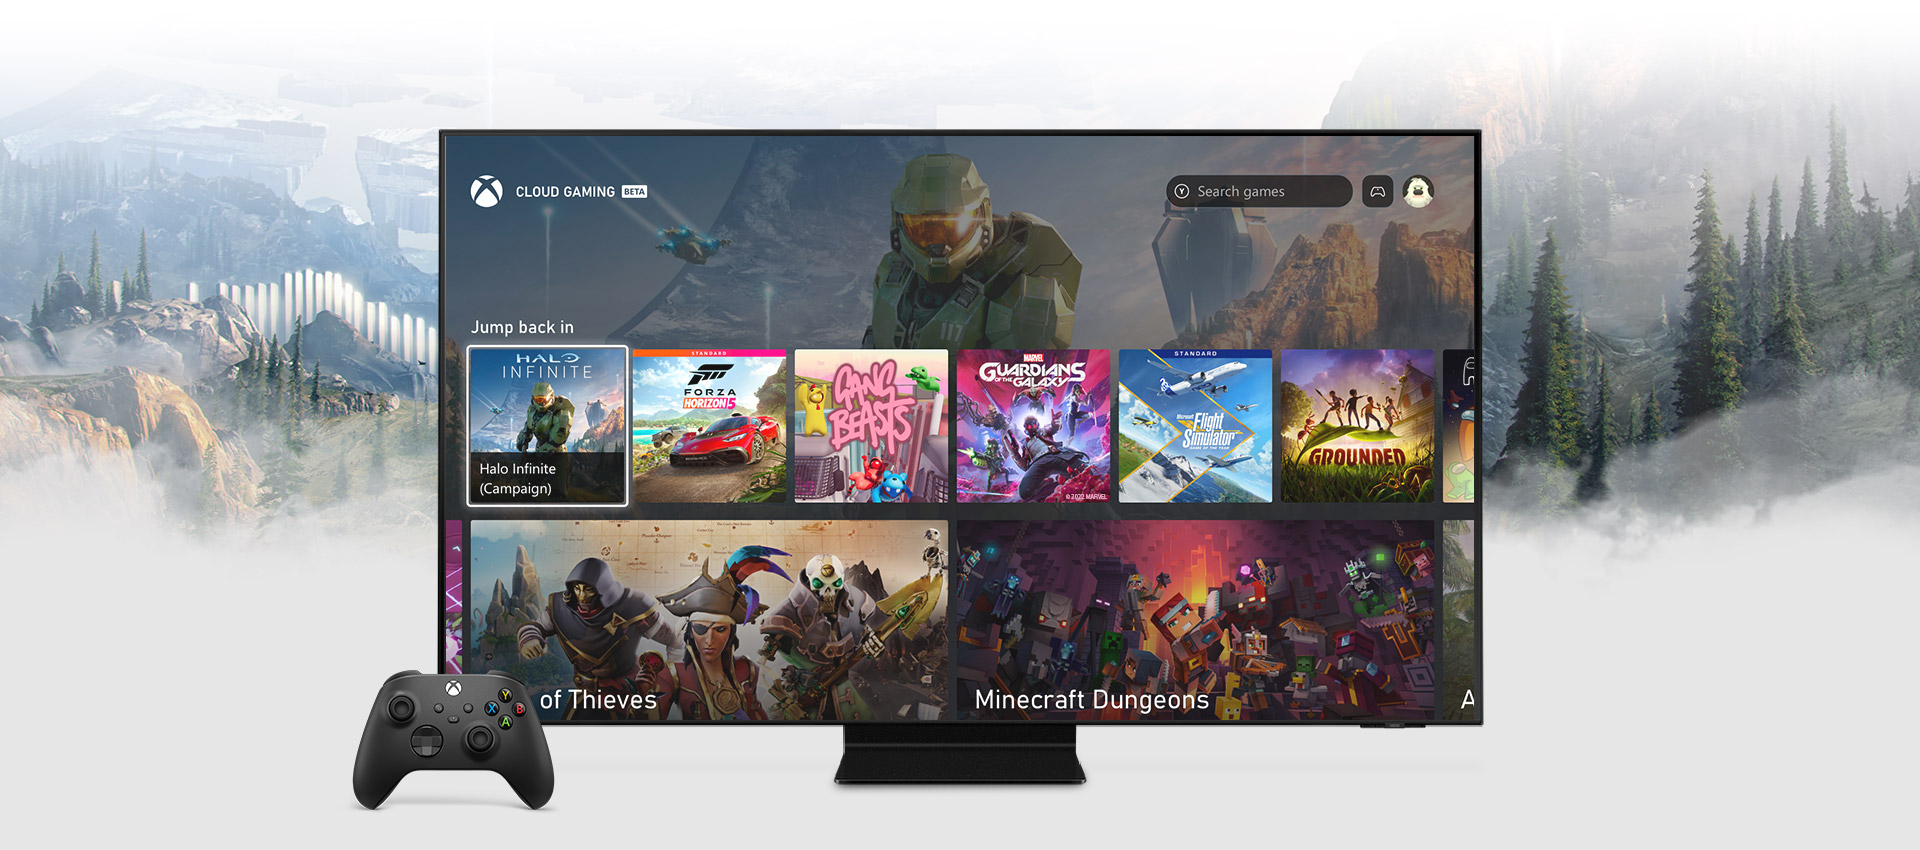 Samsung スマート TV での Xbox アプリのホーム画面